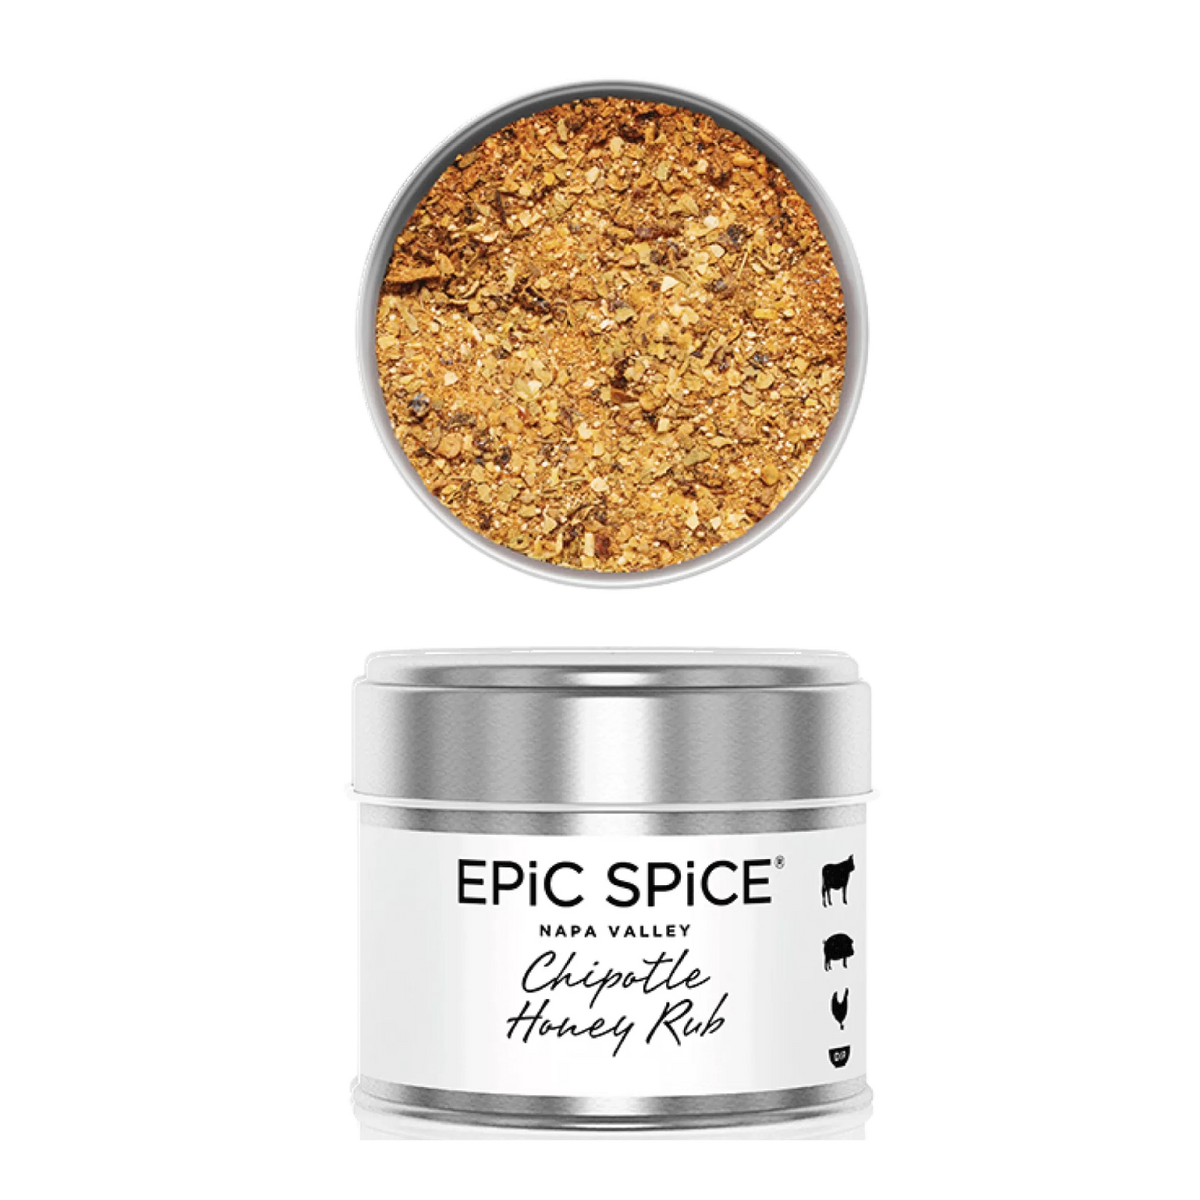 Суміш спецій ЕPIC SPICE "Чипотле з медом" для барбекю, 150 г, Chipotle Honey Rub